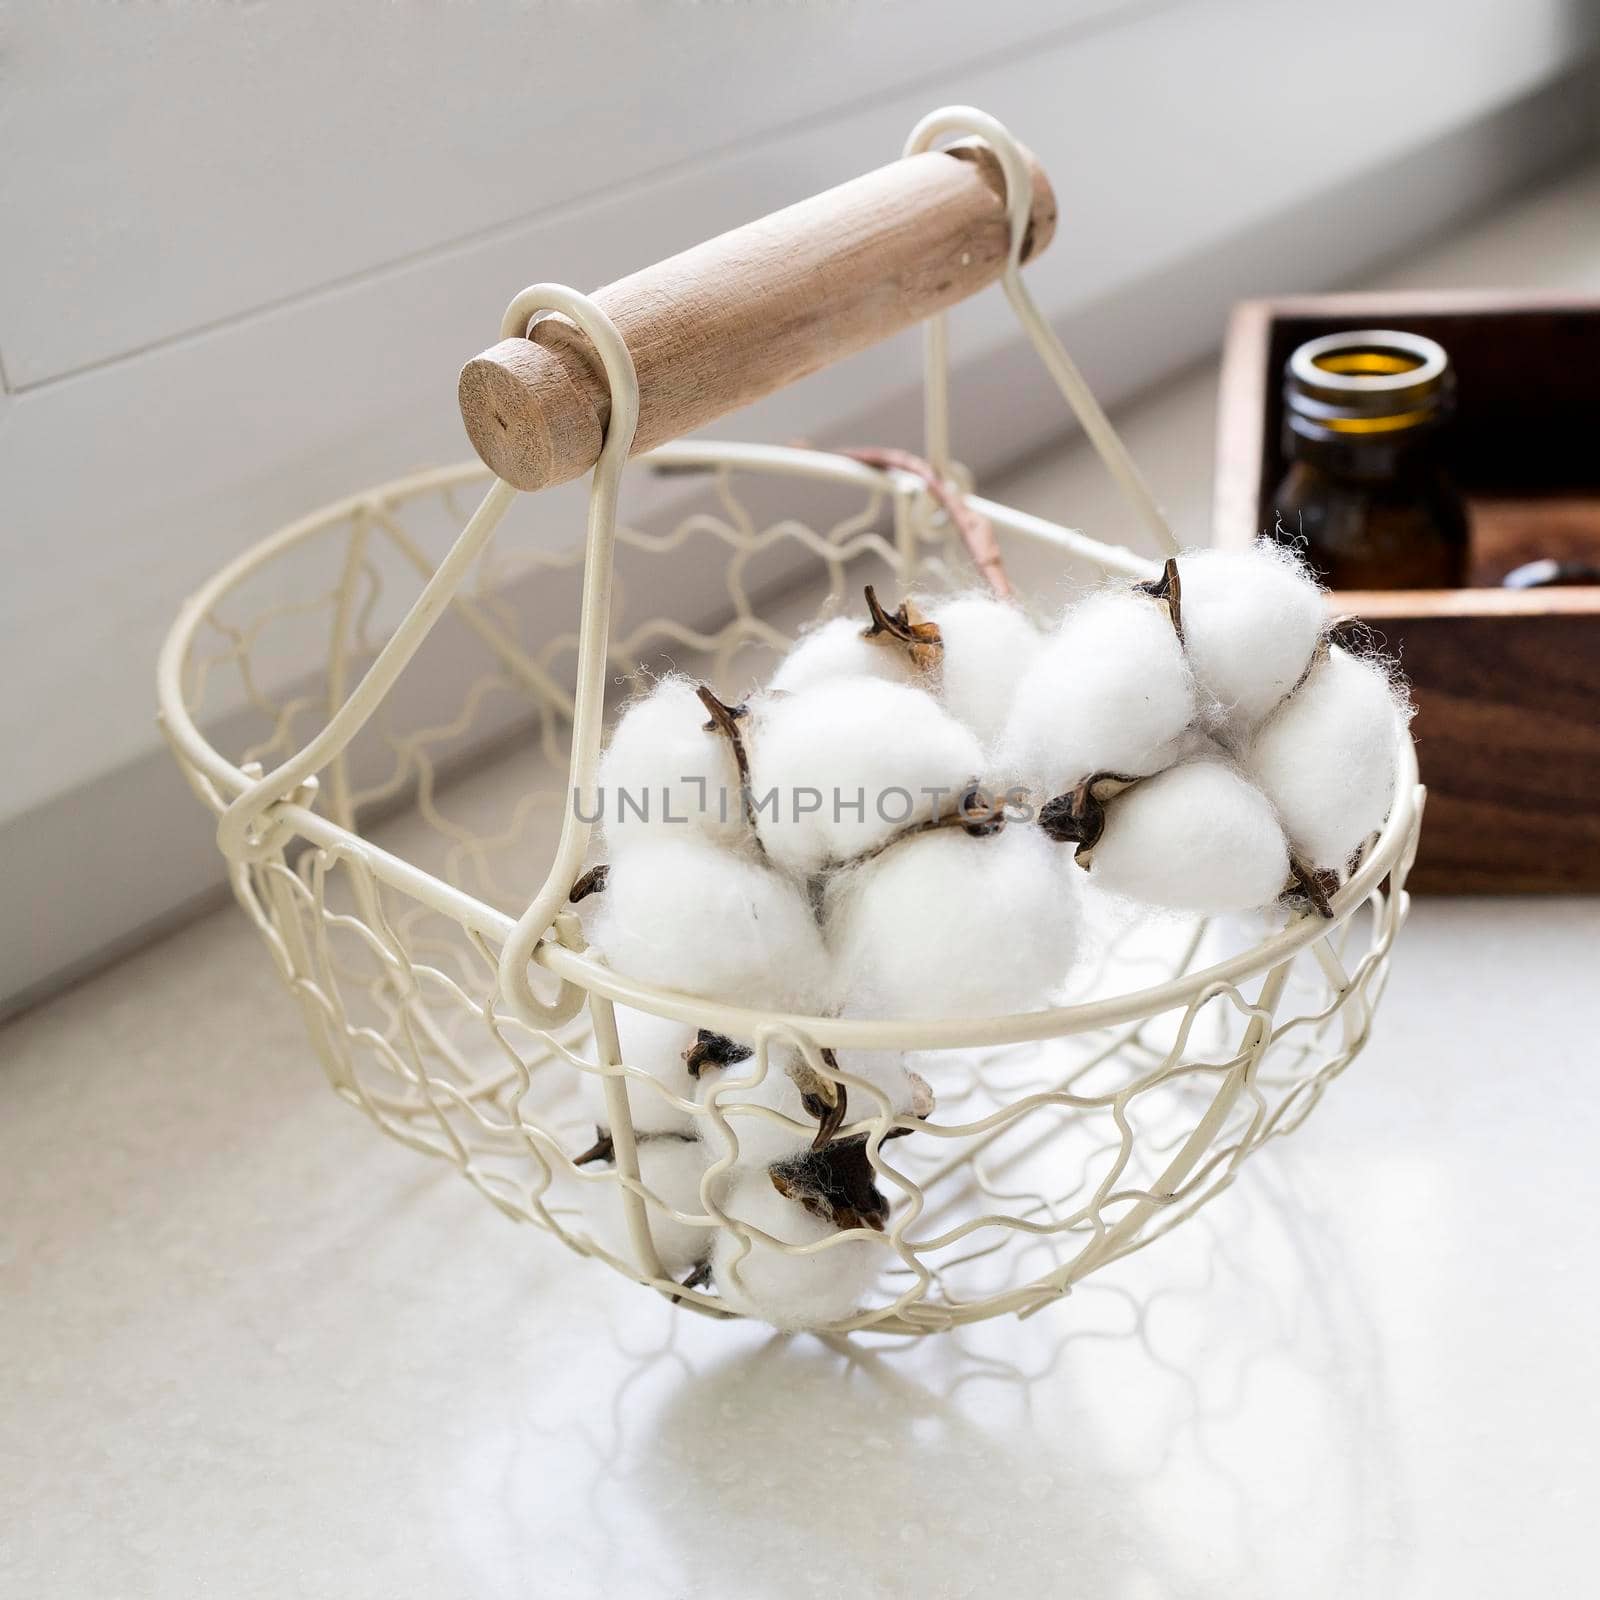 wicker metal basket with cotton flowers inside. by elenarostunova